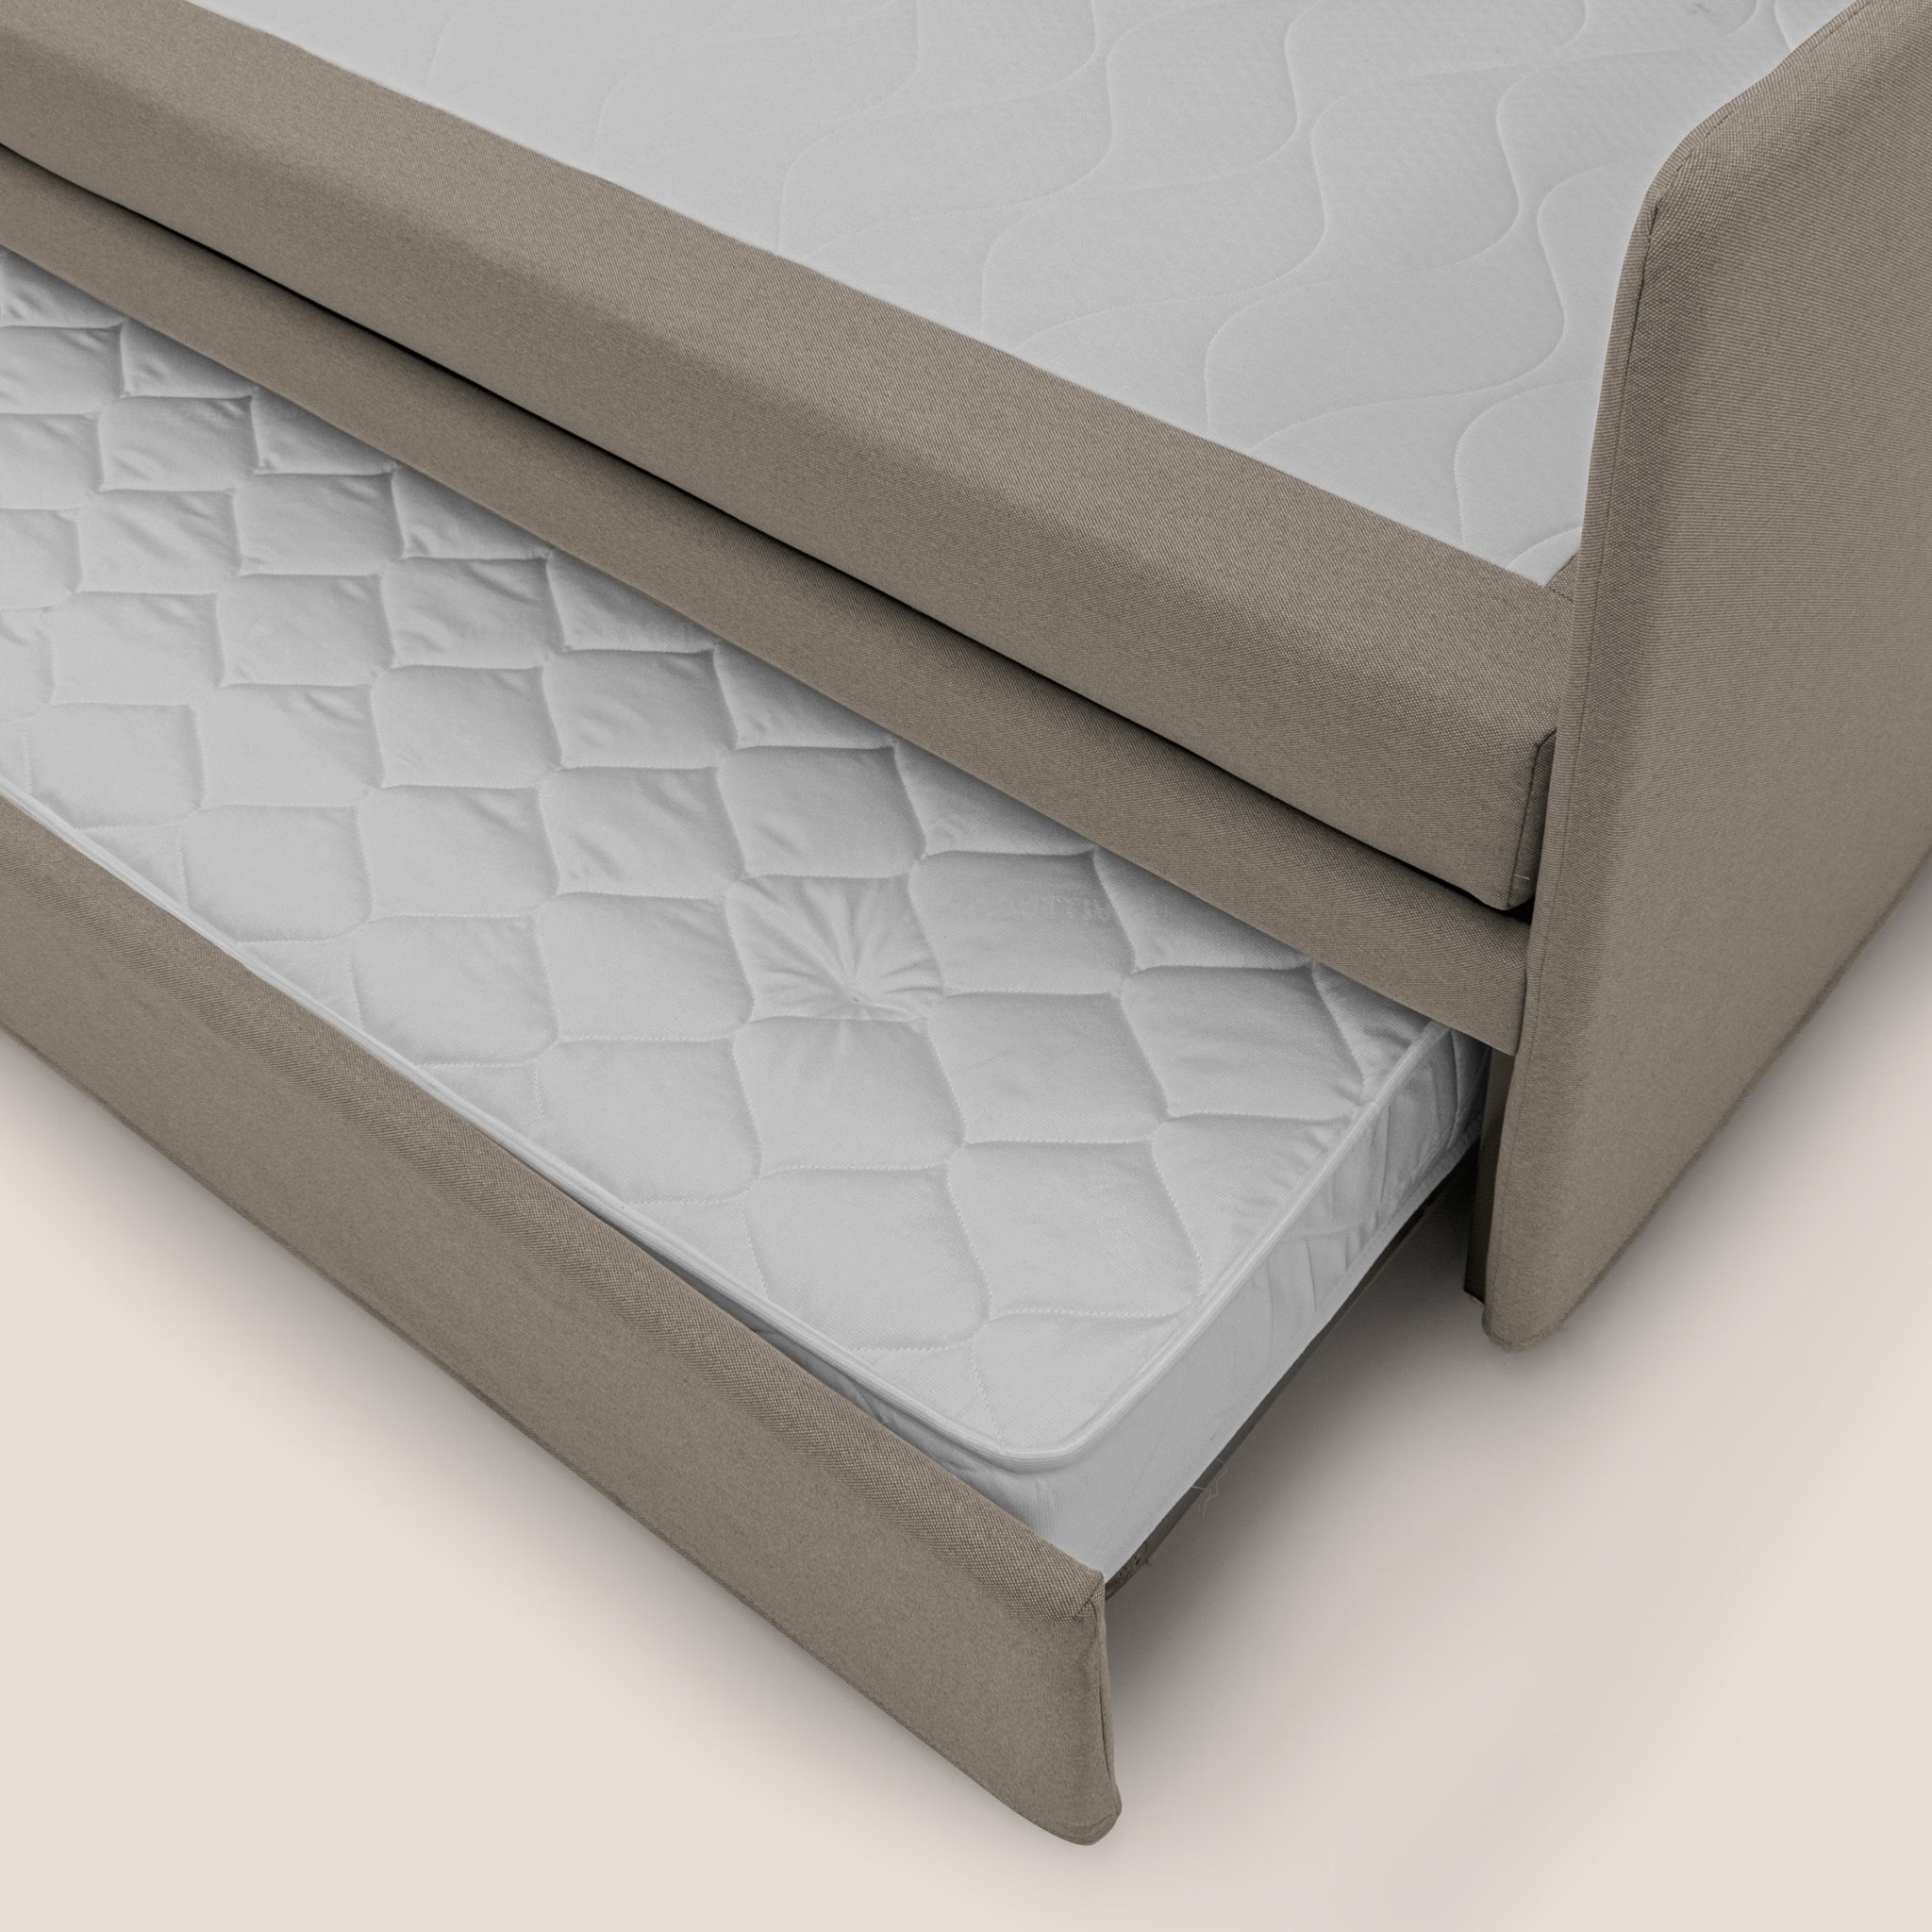 Durini Divano duplex con doppio letto in tessuto simil cotone impermeabile T13